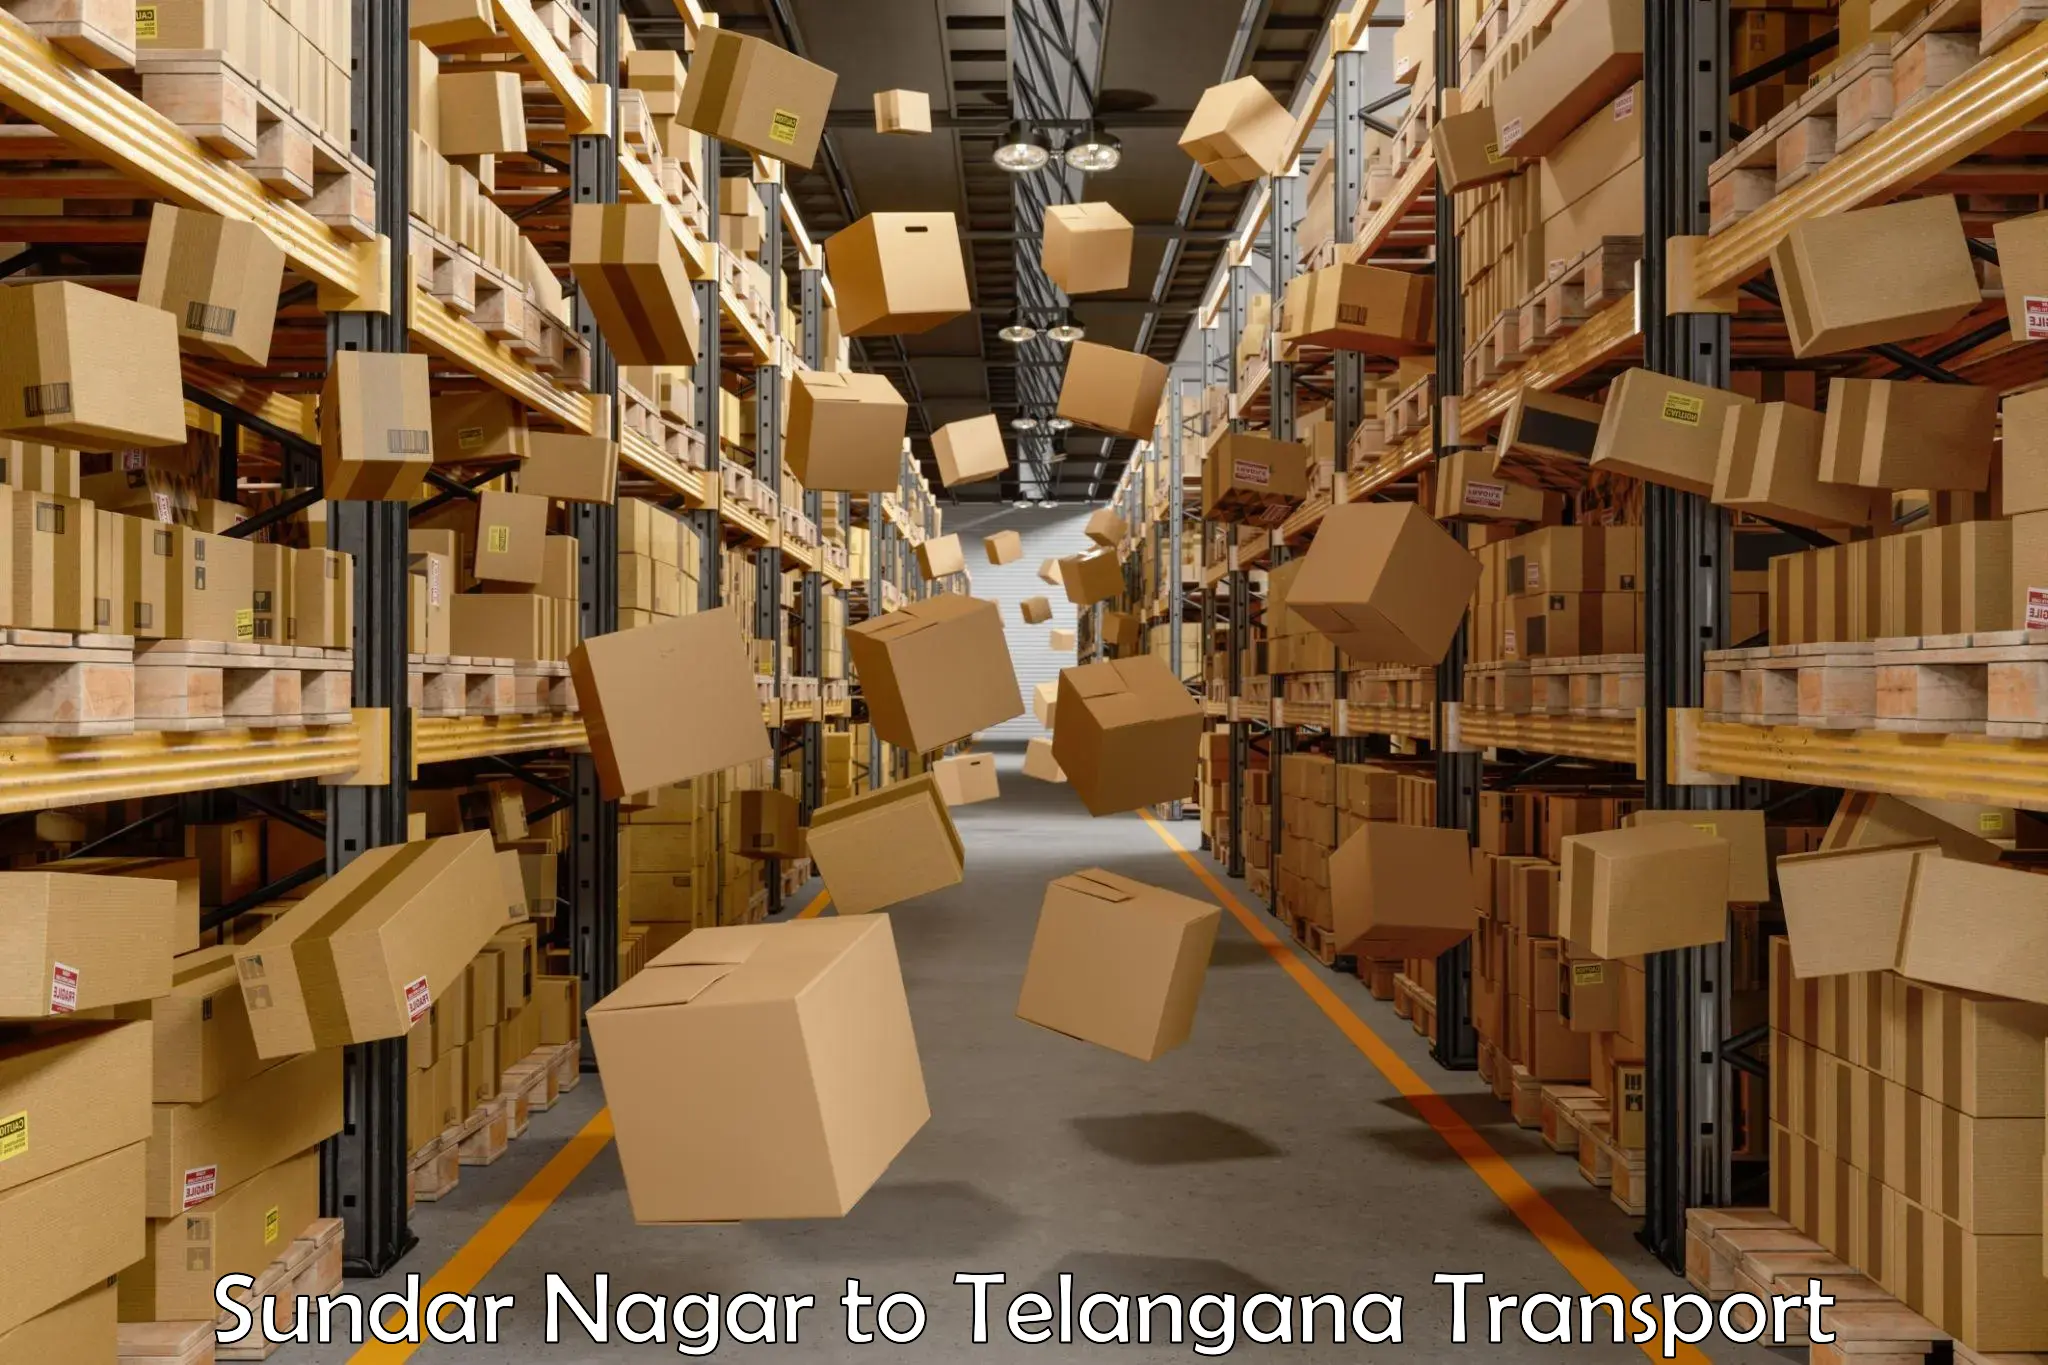 International cargo transportation services Sundar Nagar to Rangareddy